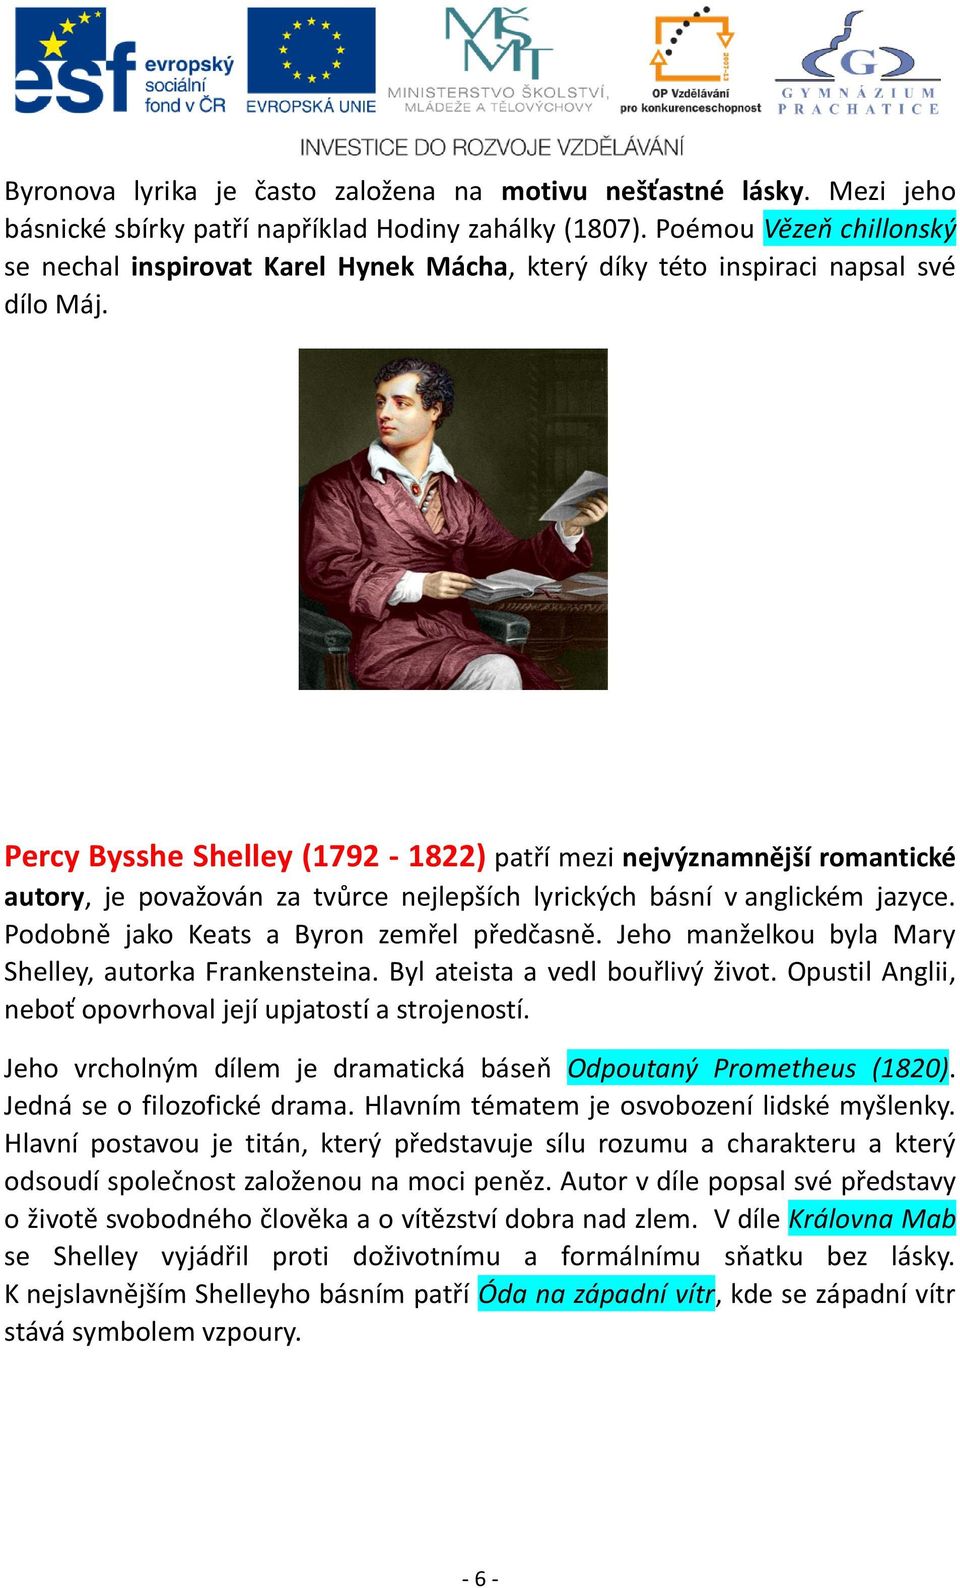 Percy Bysshe Shelley (1792-1822) patří mezi nejvýznamnější romantické autory, je považován za tvůrce nejlepších lyrických básní v anglickém jazyce. Podobně jako Keats a Byron zemřel předčasně.